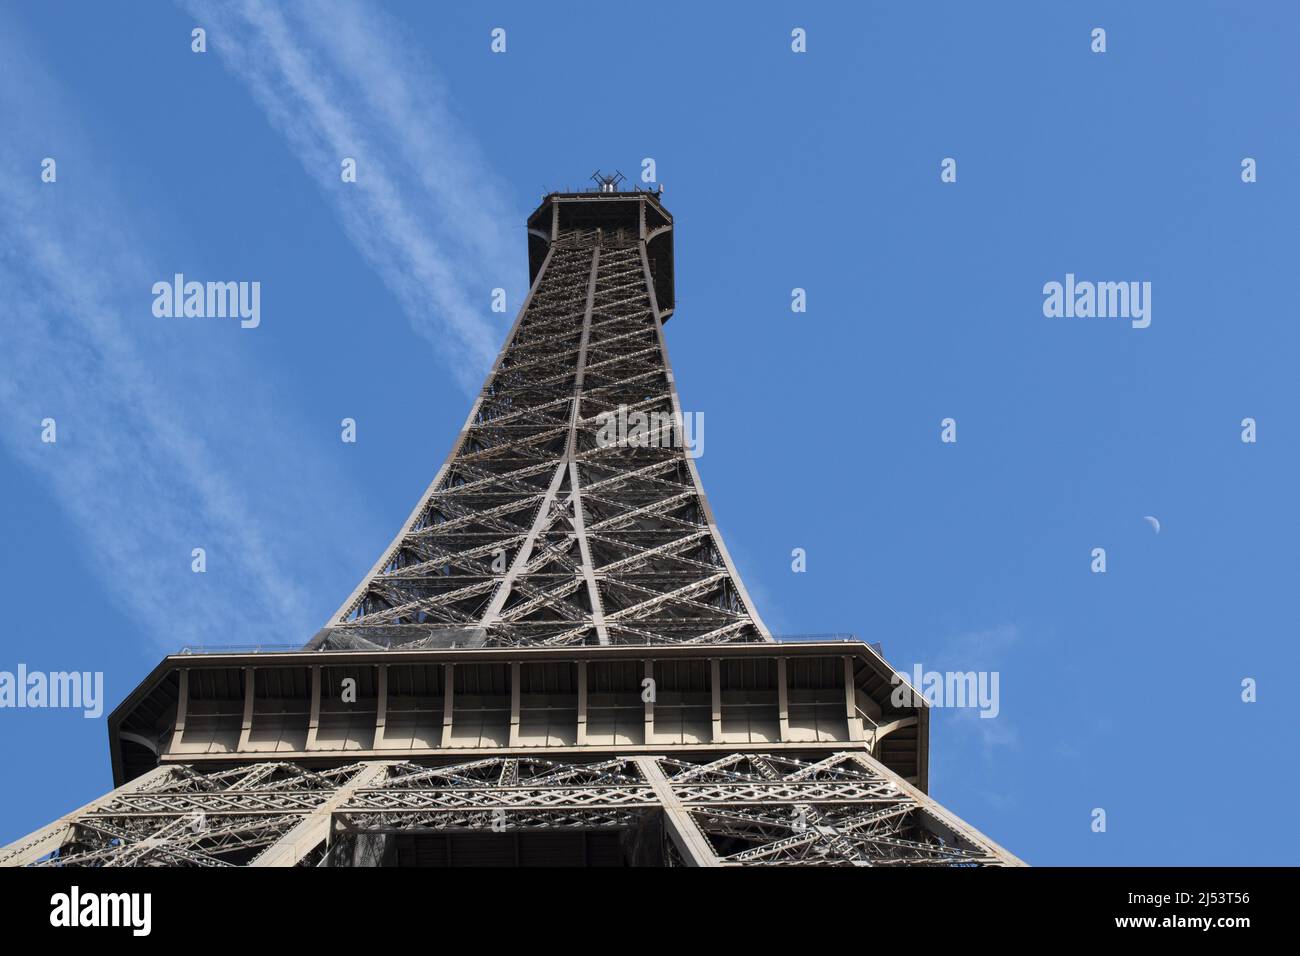 Paris, France, Europe: Détails vus de dessous de la Tour Eiffel, tour en métal achevée en 1889 par Gustave Eiffel pour l'exposition universelle Banque D'Images